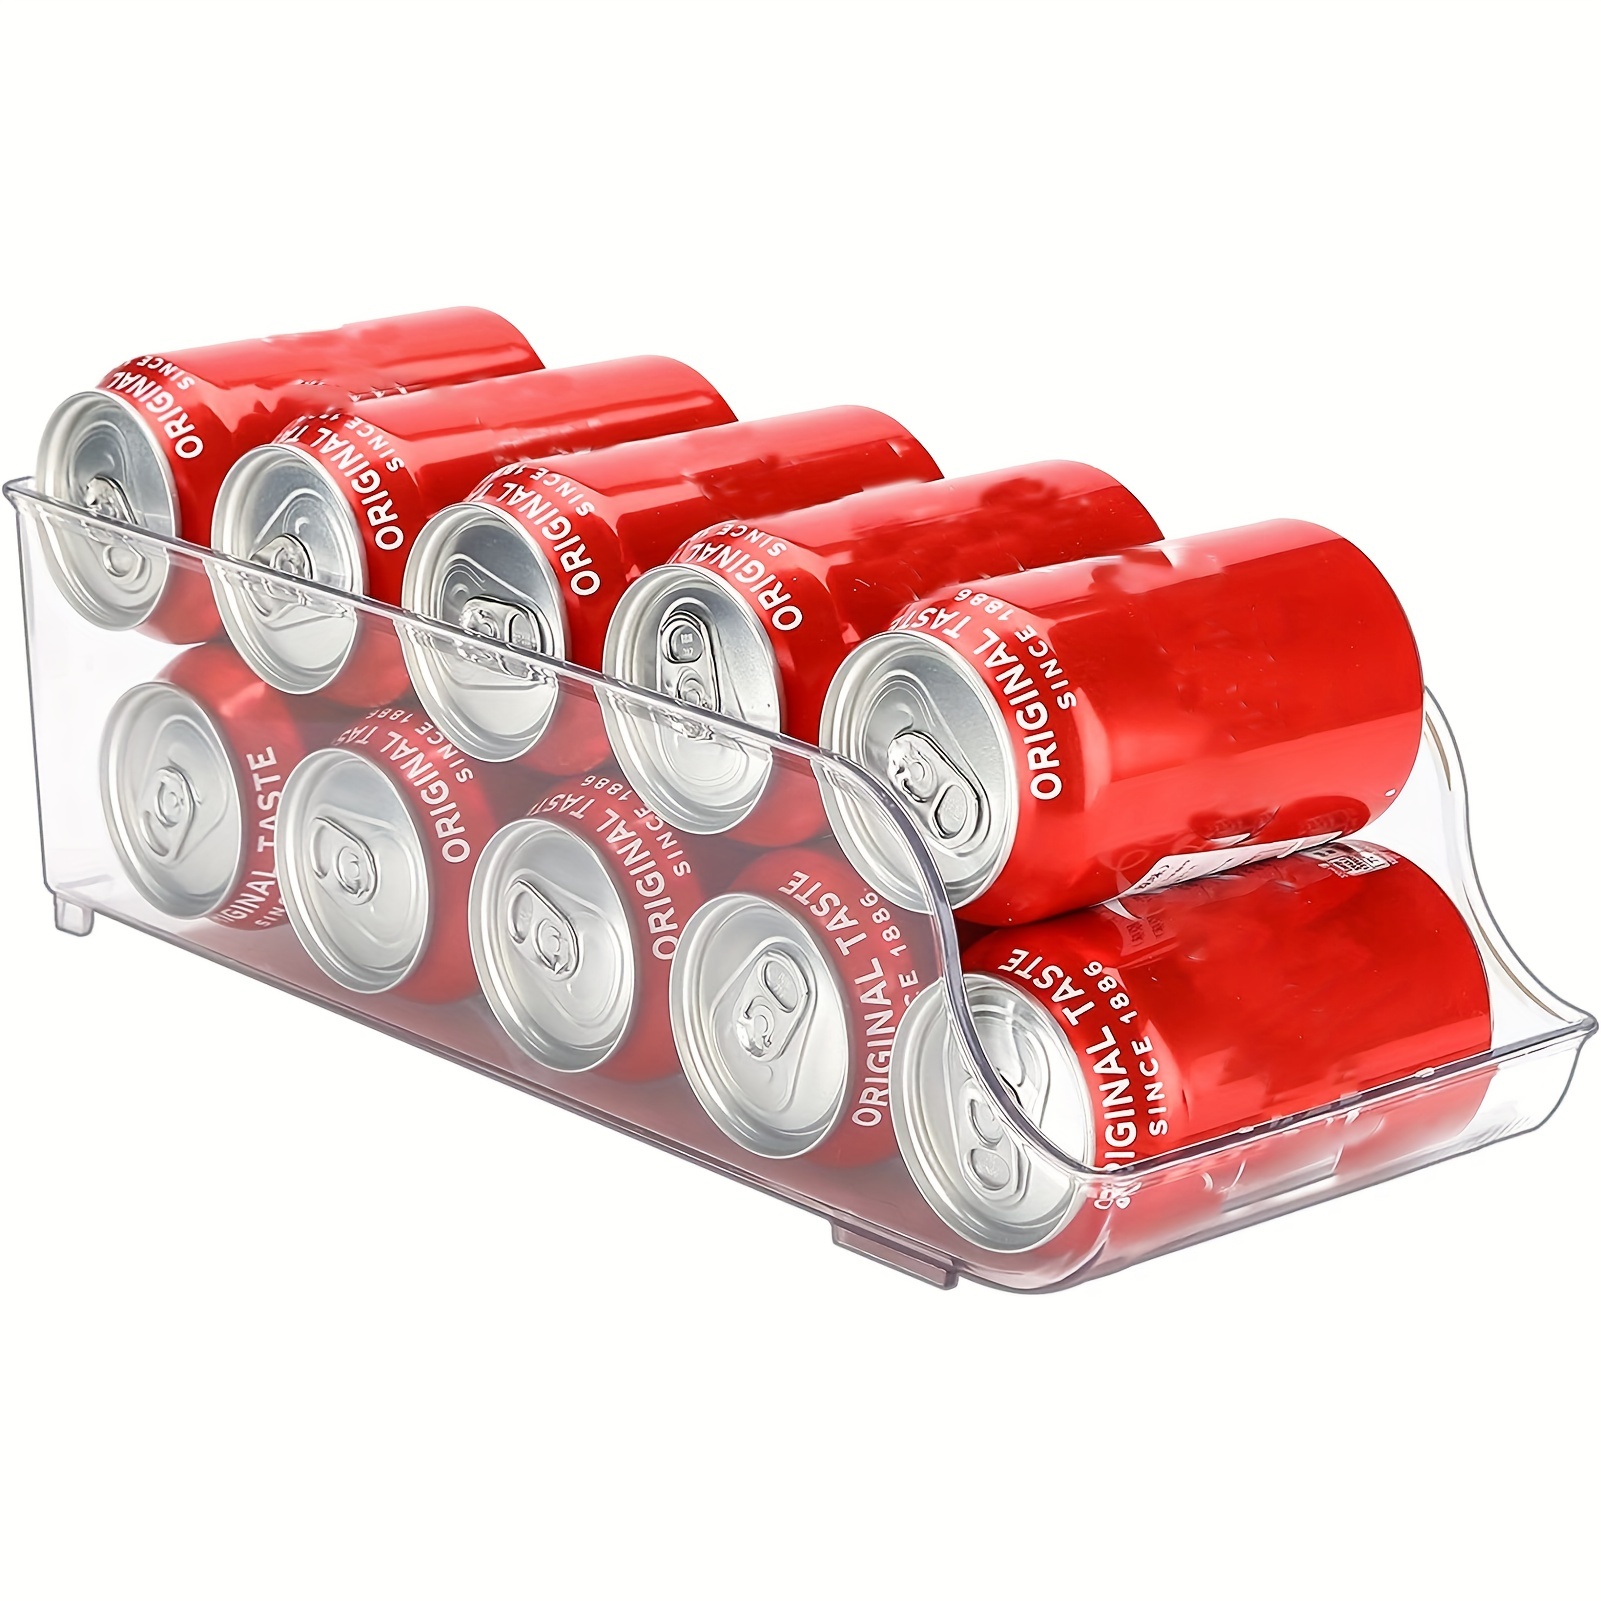 Puricon Paquete de 2 organizadores de latas de soda para refrigerador,  contenedor de plástico transparente enlatado para alimentos y bebidas